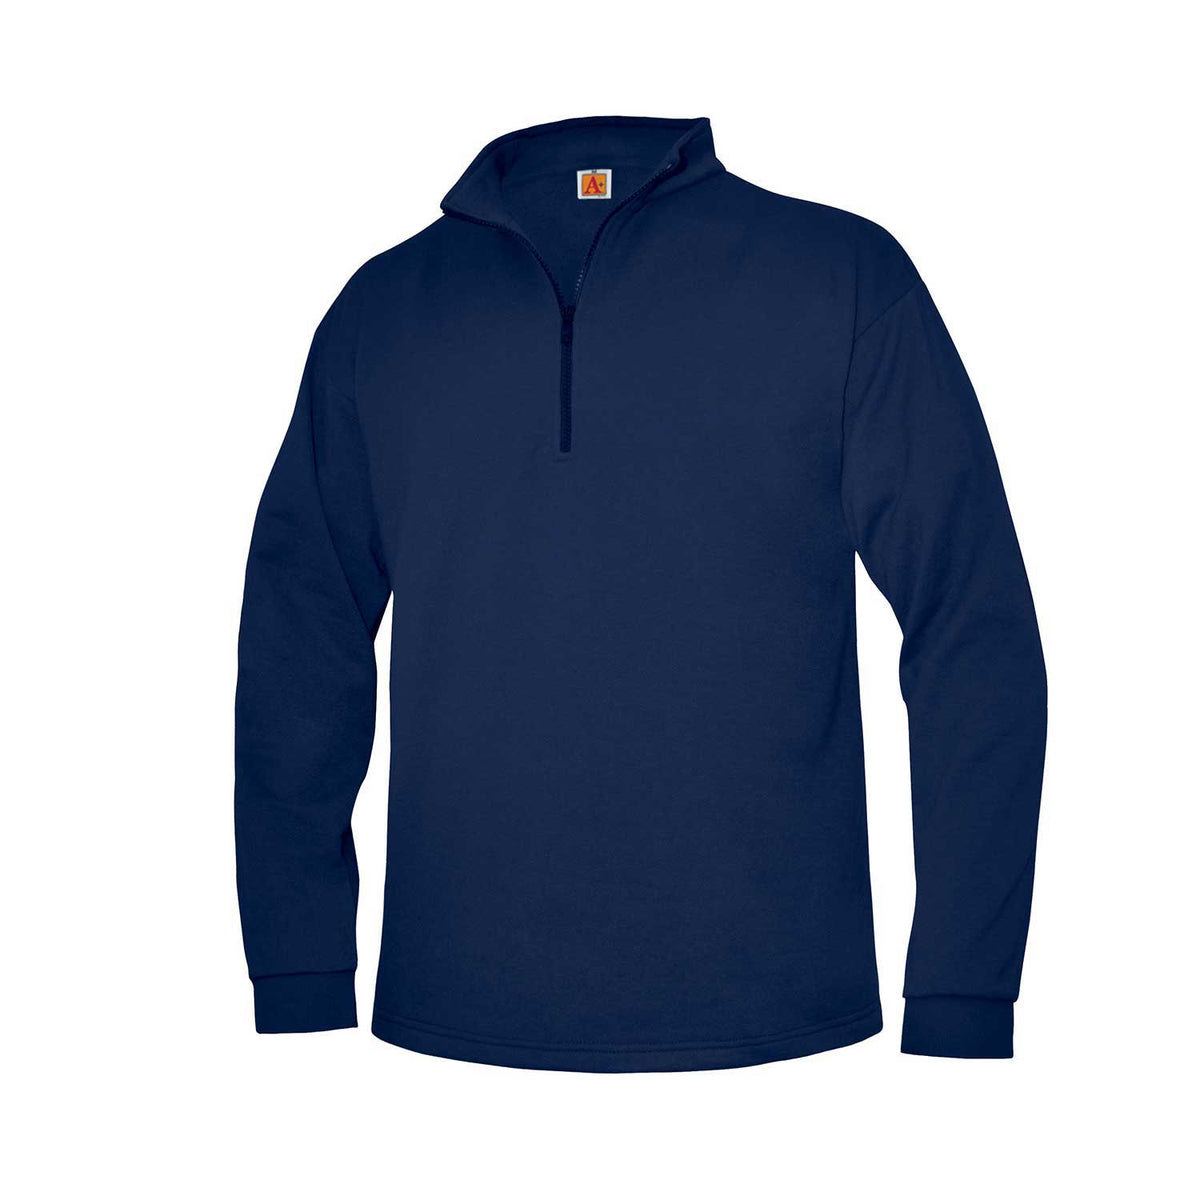 Unisex Cadet Collar Quarter Zip Sweatshirt - Adult